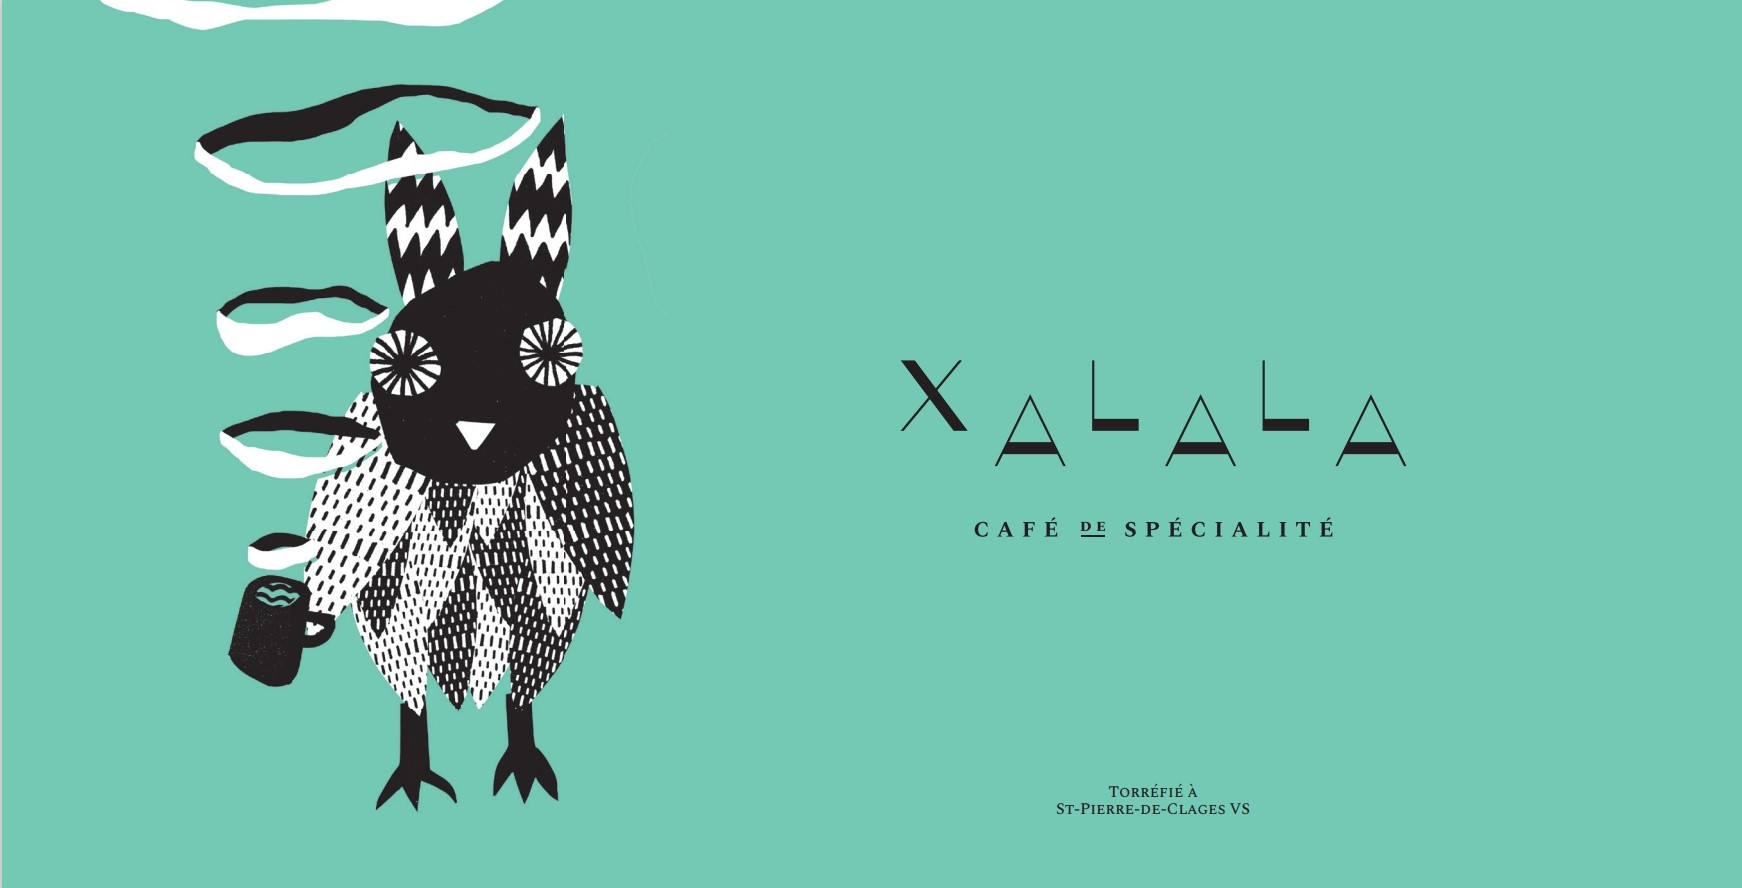 Xalala Café